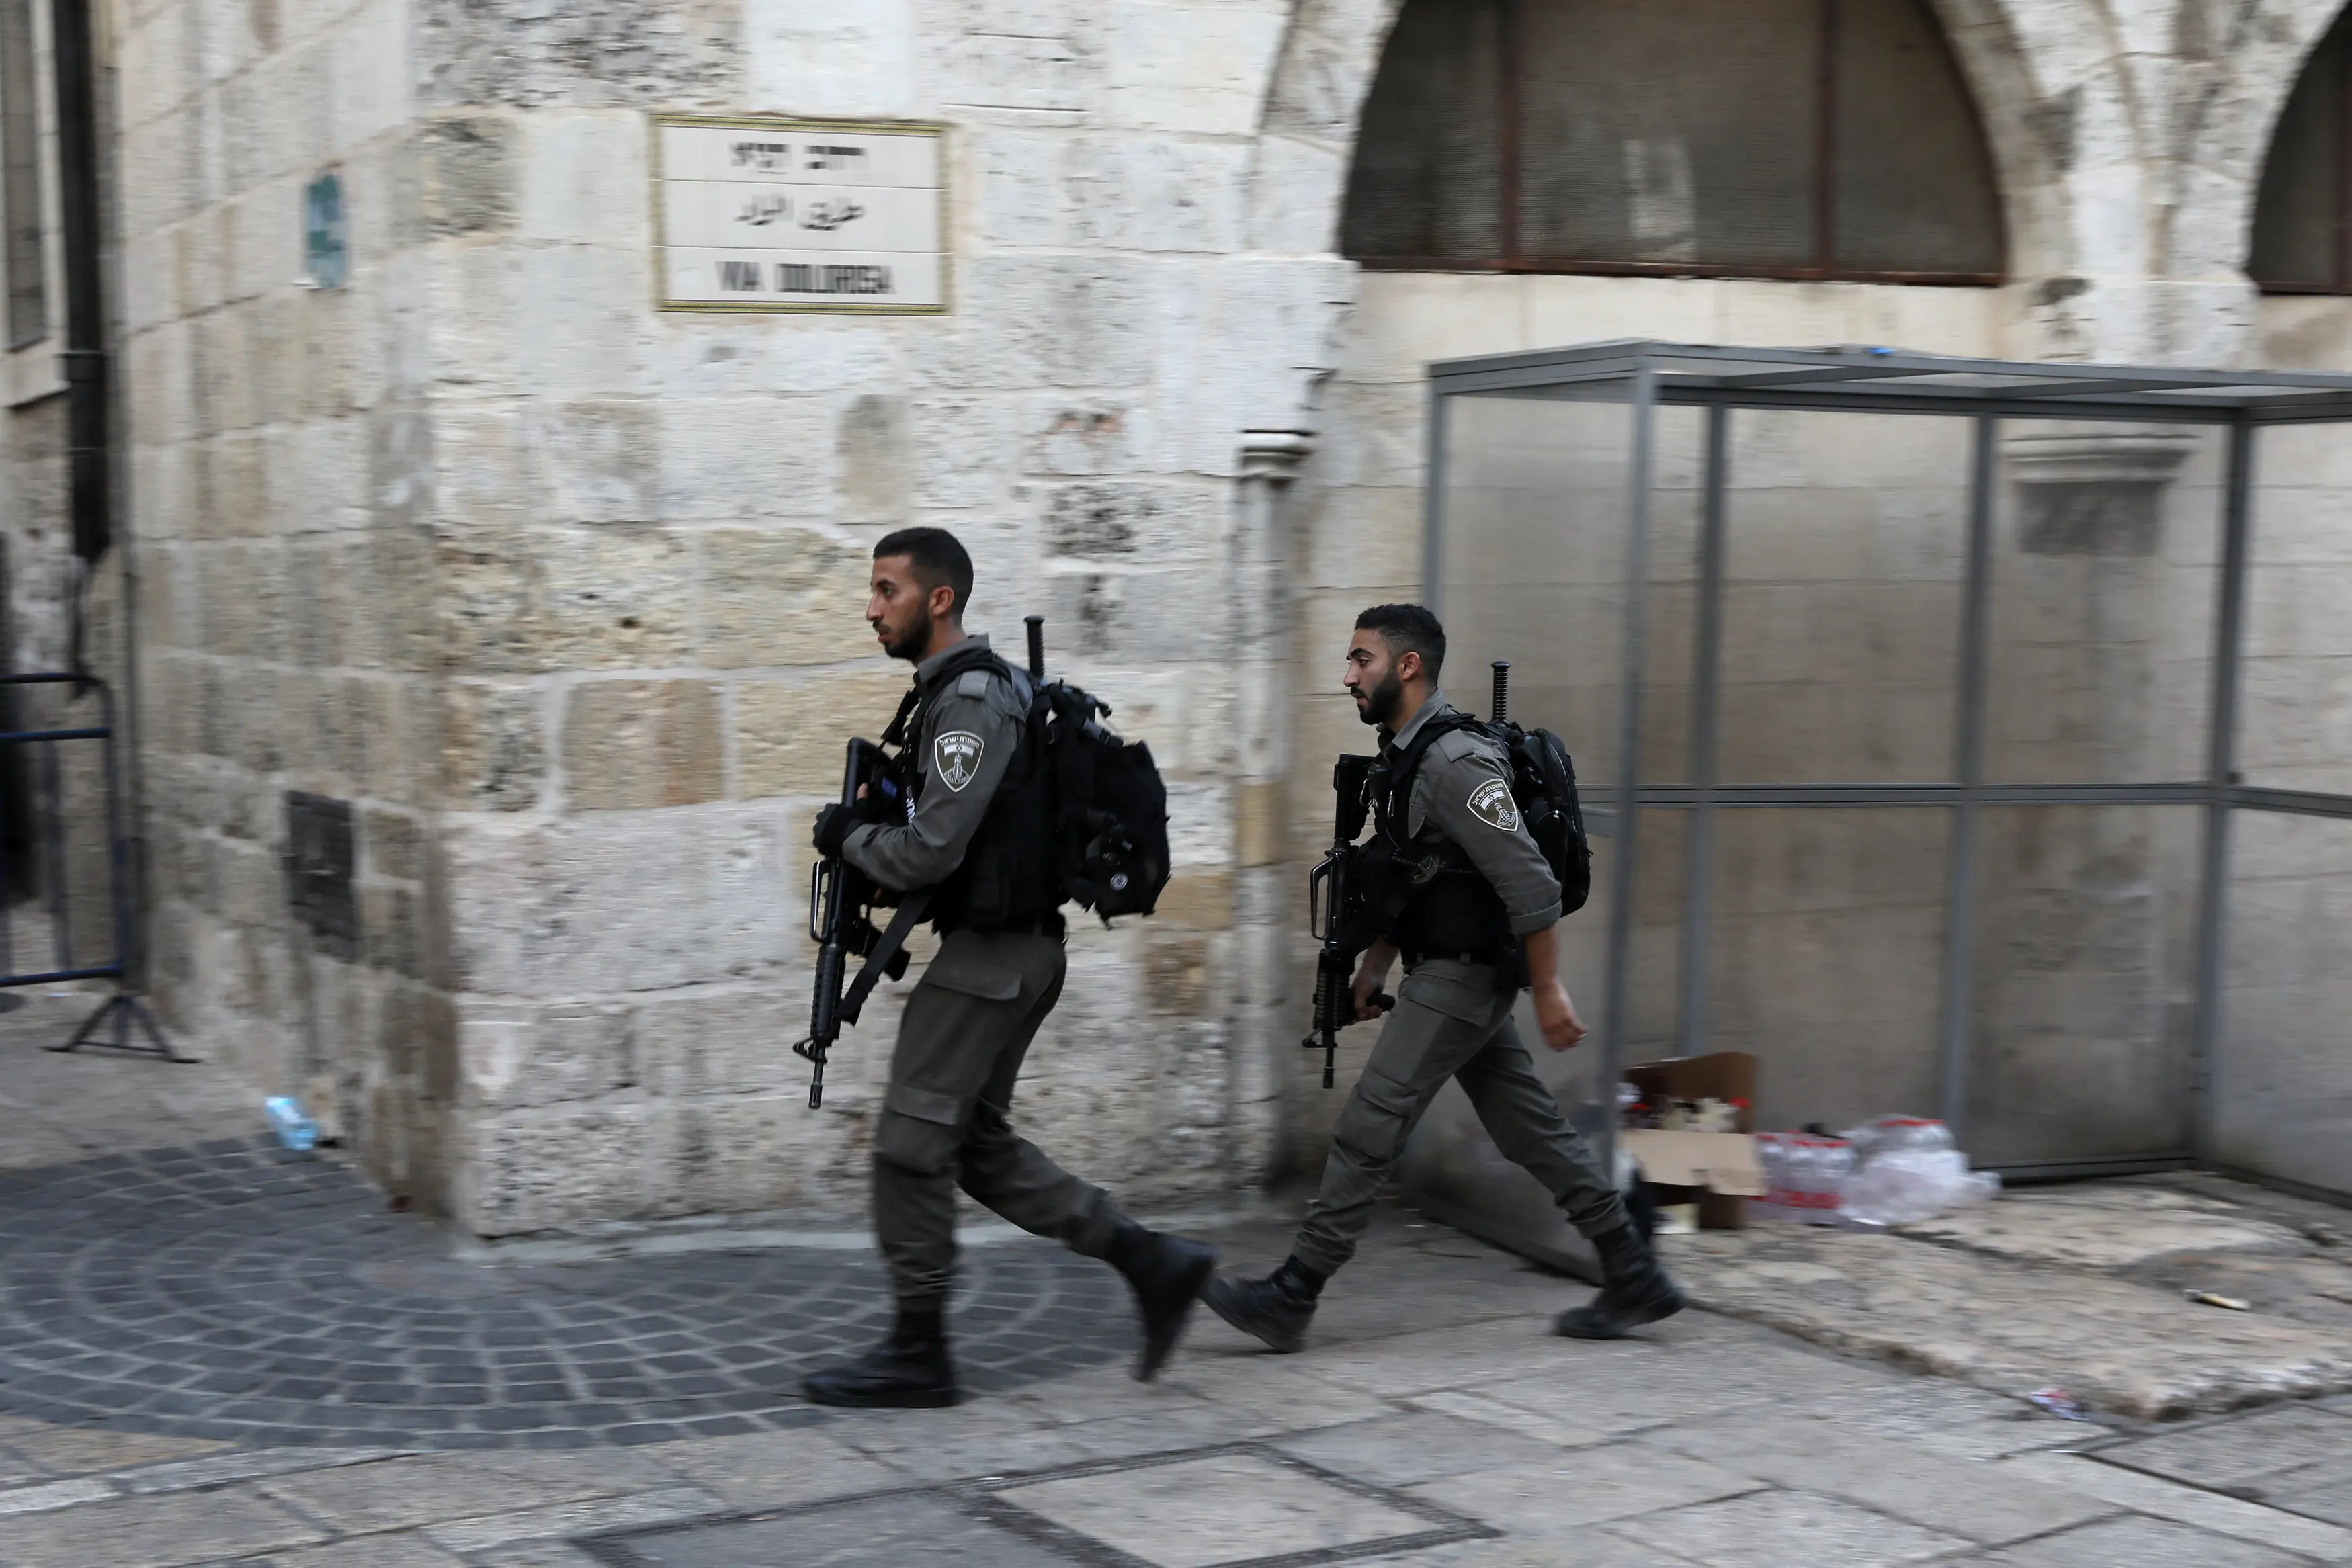 שוטרי מג"ב סורקים בעיר העתיקה בירושלים לאחר ניסיון פיגוע דקירה ברחוב שער הגיא, 17 באוגוסט 2018